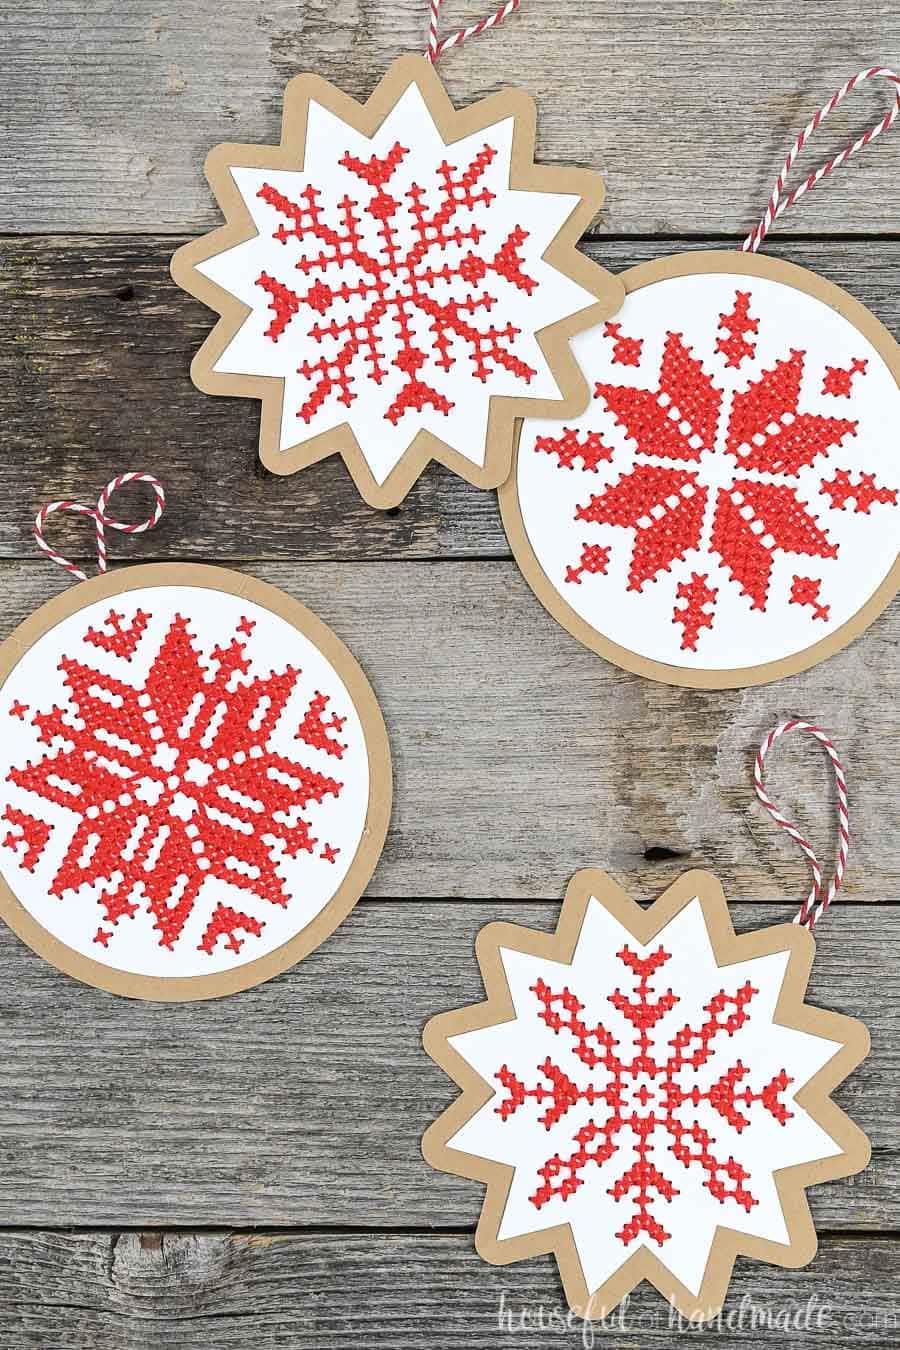 Nordic Cross-Stitch Ornaments